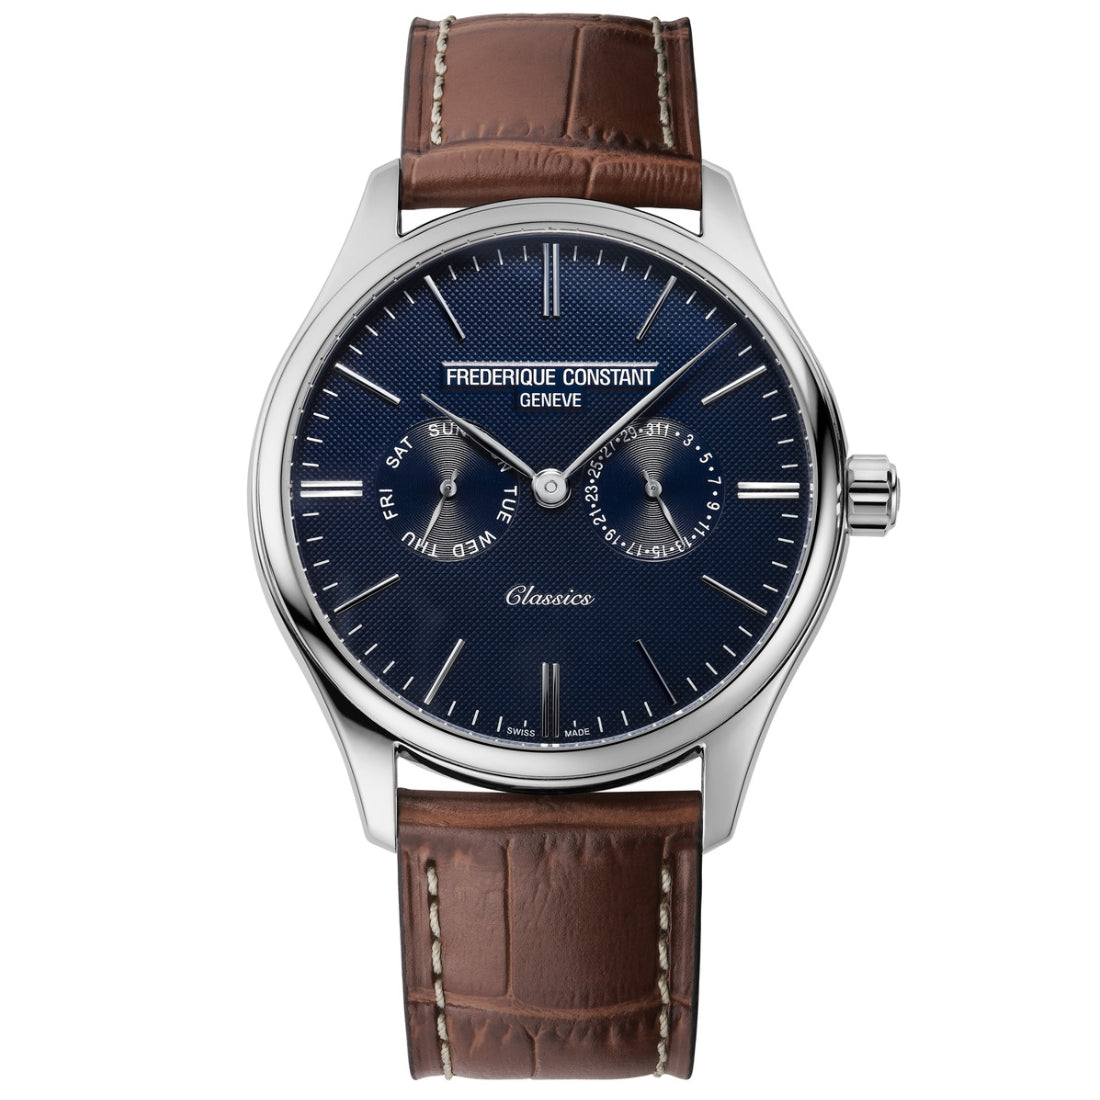 ساعة فريدريك كونستانت الرجالية بحركة كوارتز ولون مينا أزرق - FC-0075